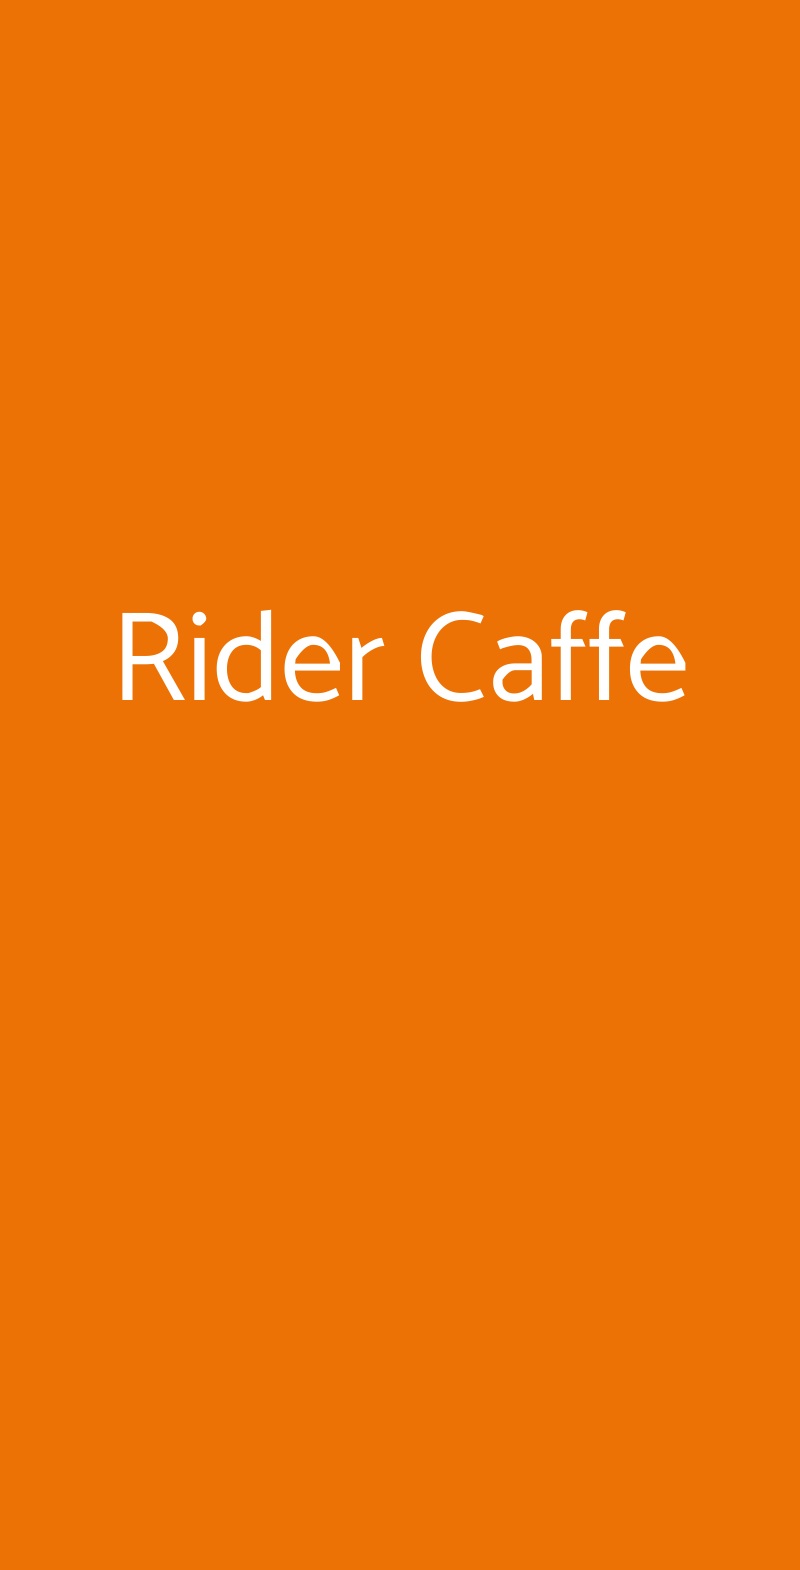 Rider Caffe Lido di Ostia menù 1 pagina